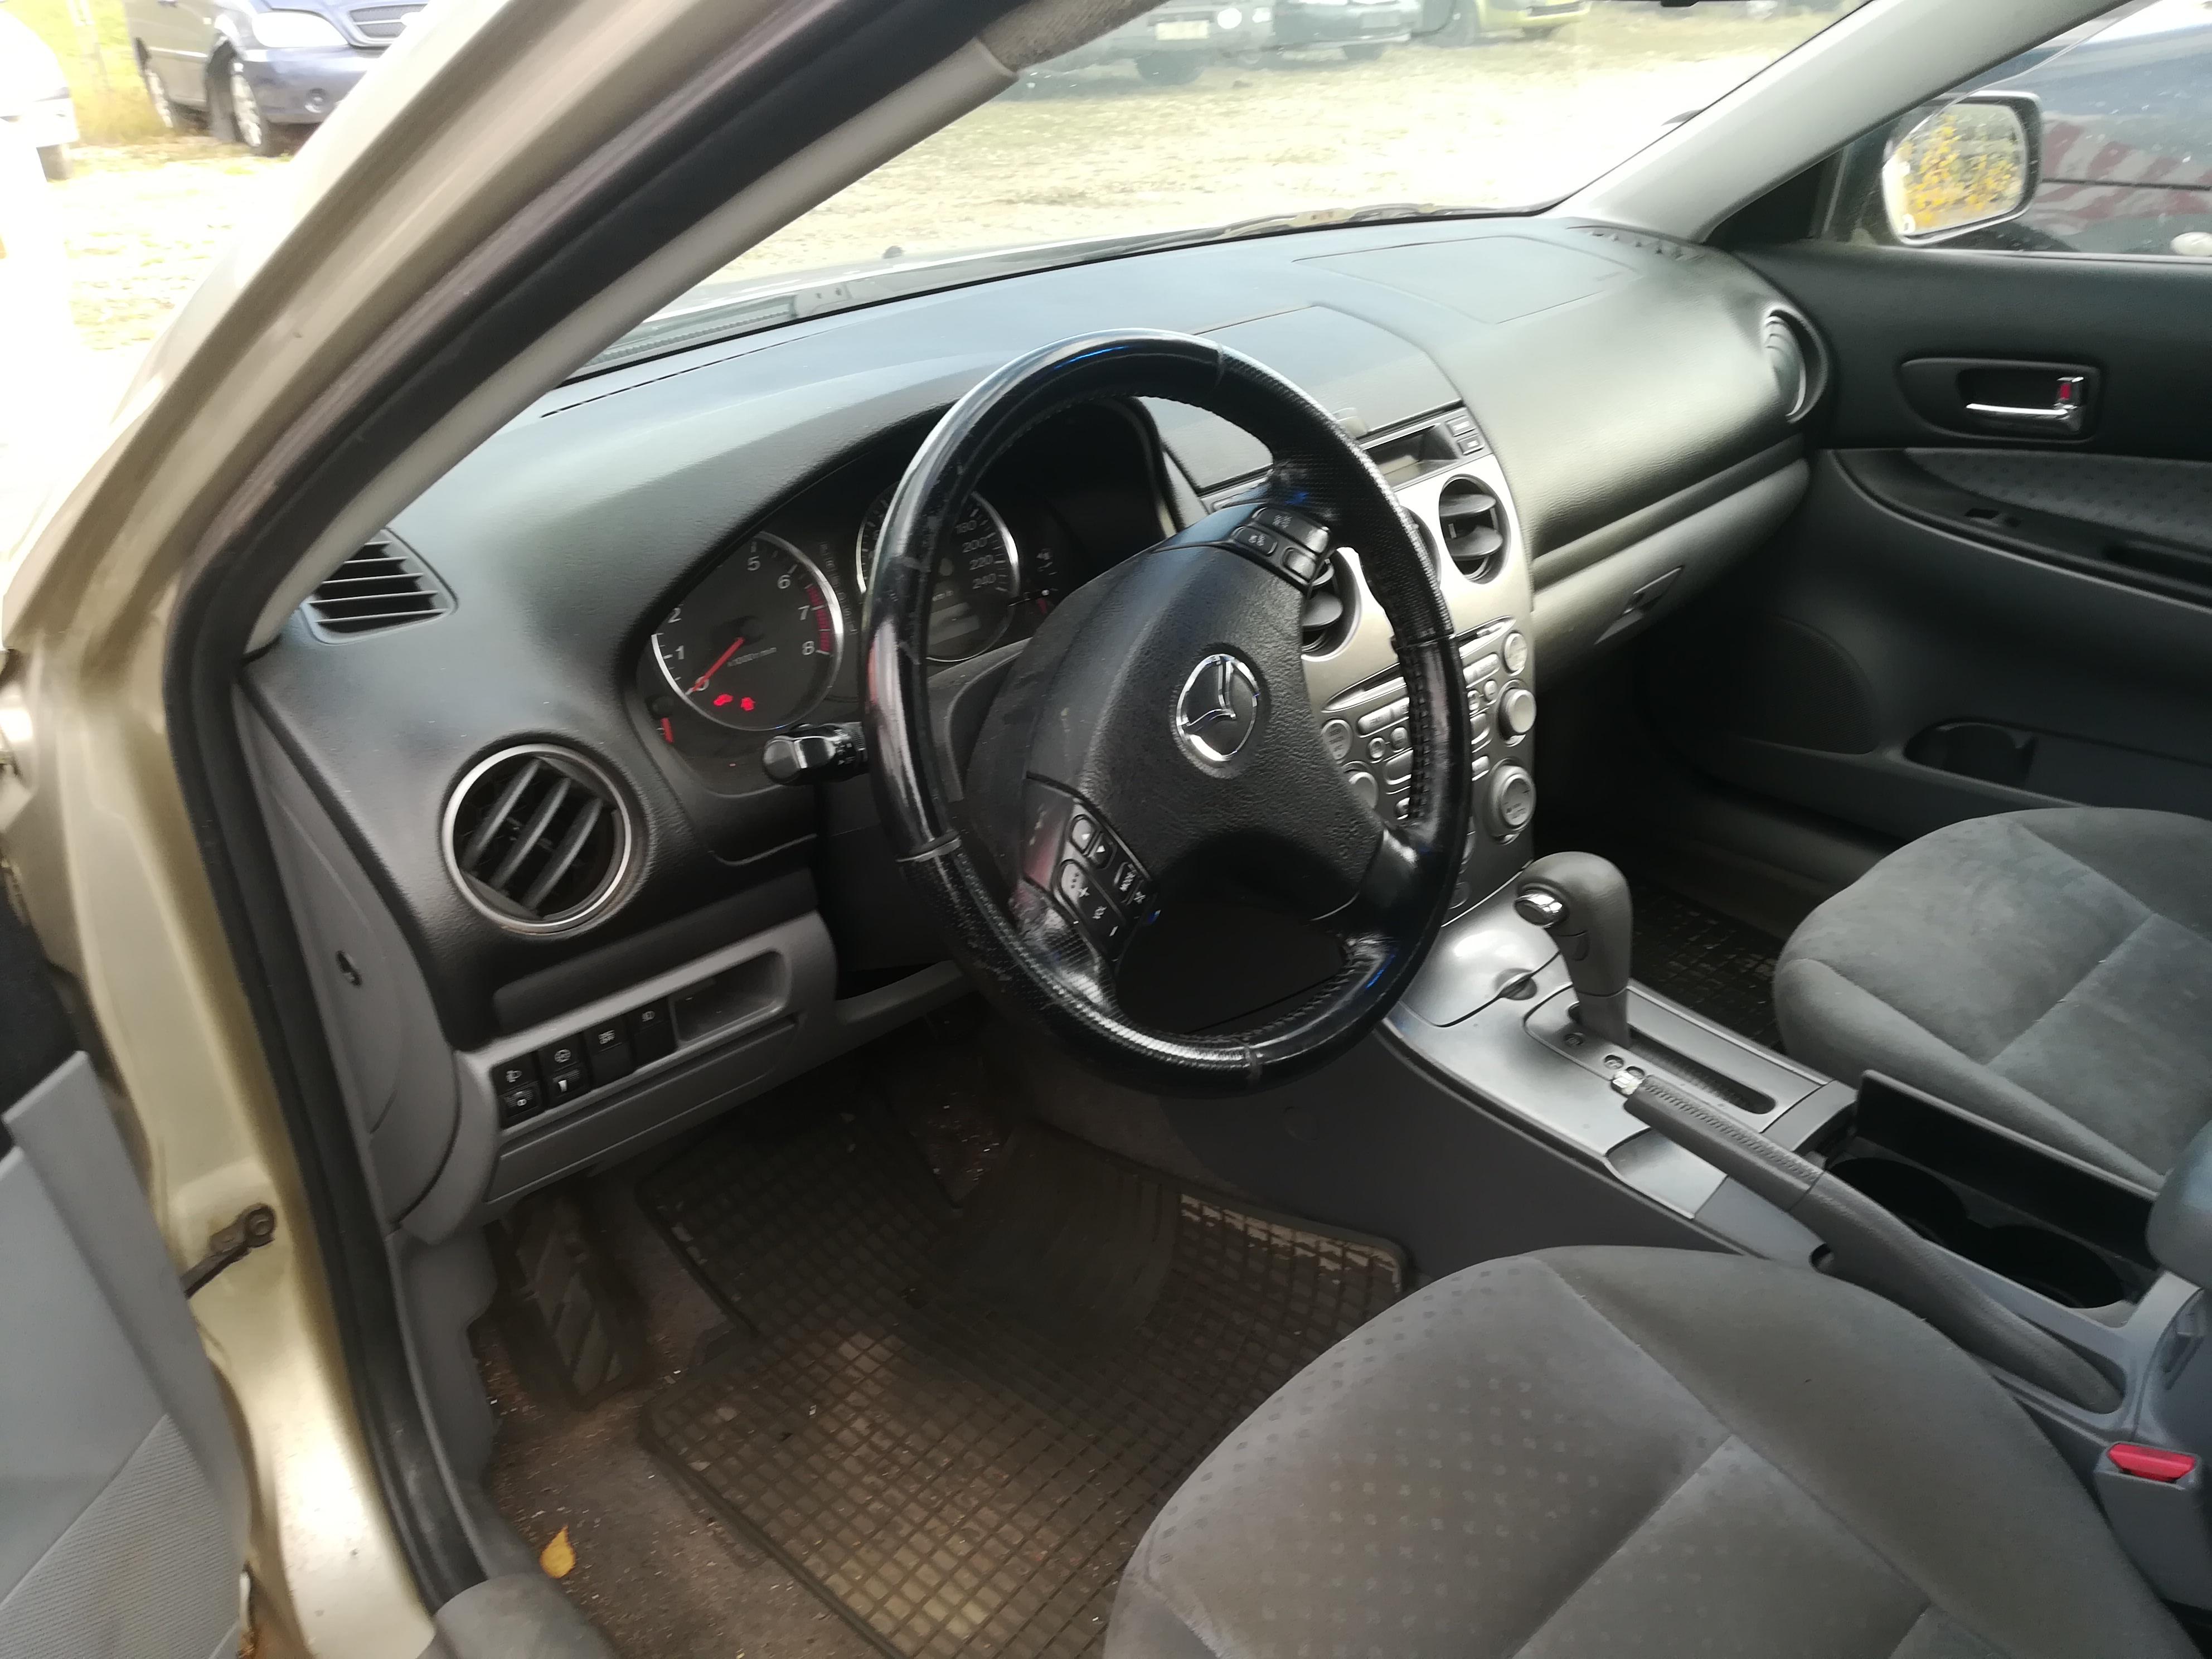 Подержанные Автозапчасти Mazda 6 2005 2.0 автоматическая универсал 4/5 d. Auksine 2019-10-14